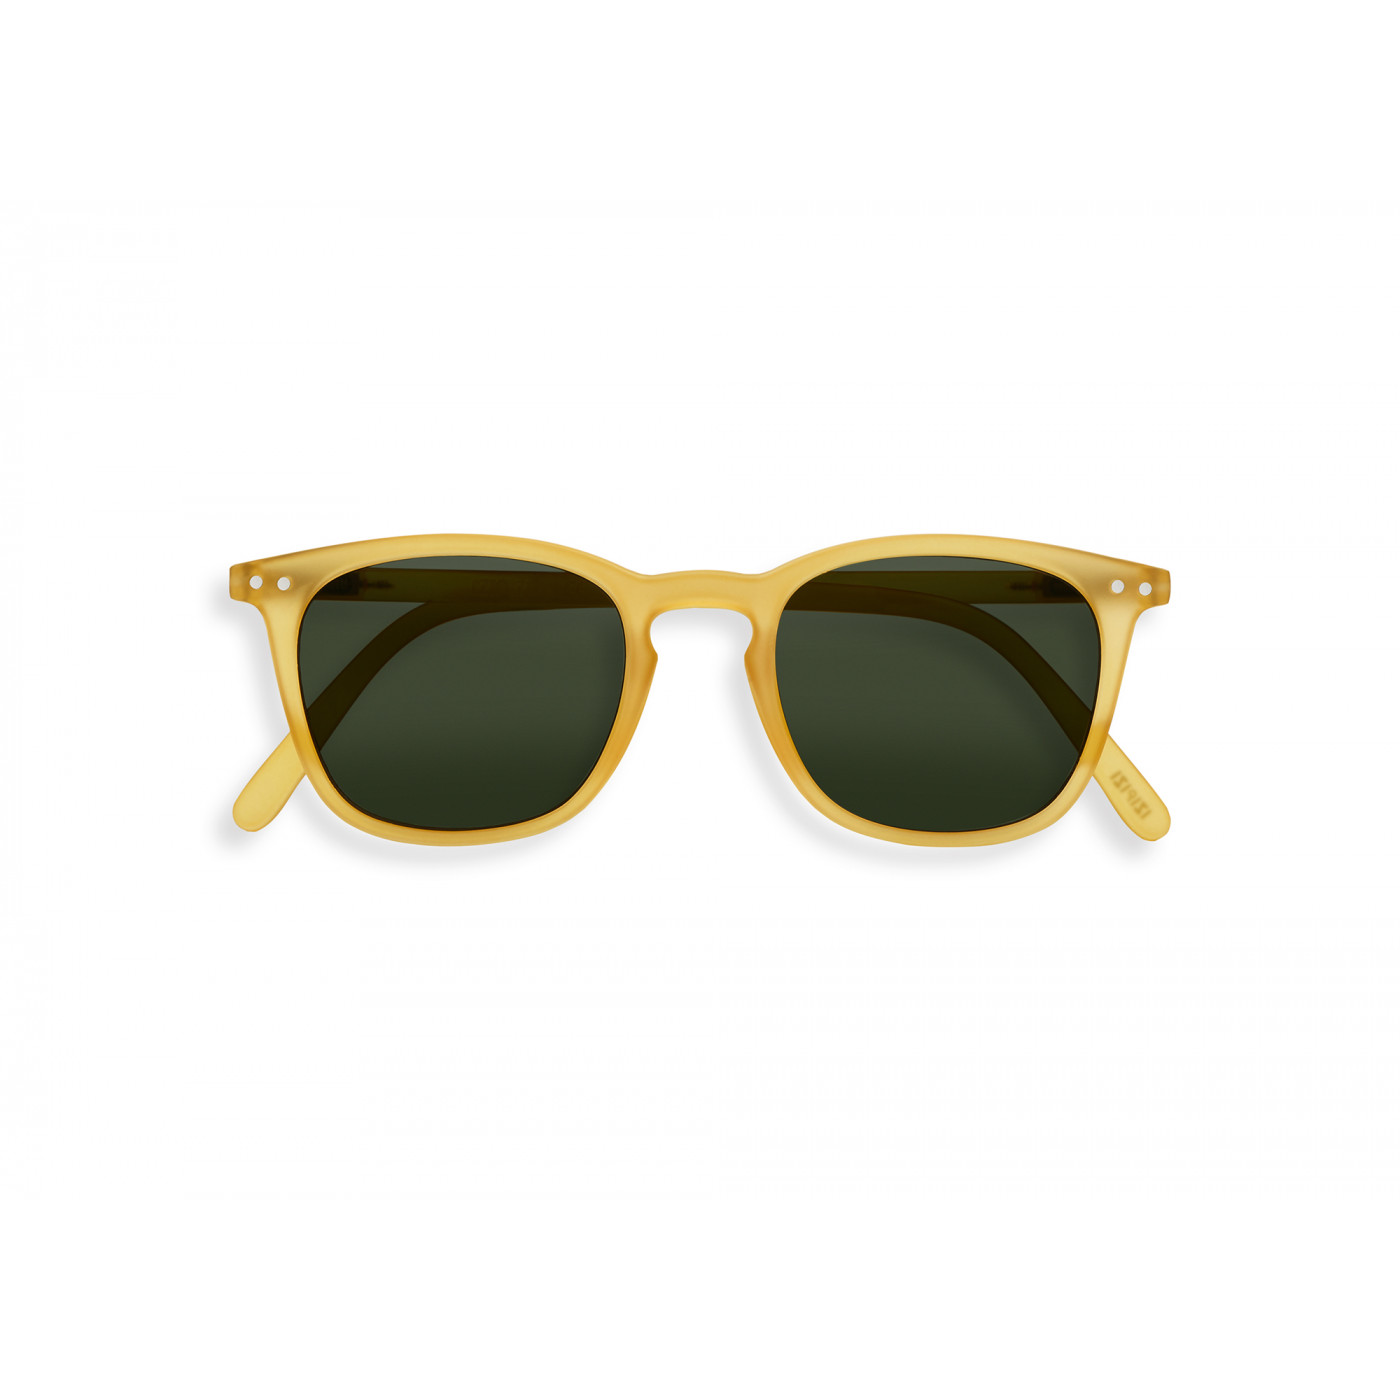 IZIPIZI Adult #E Yellow Honey Sunglasses